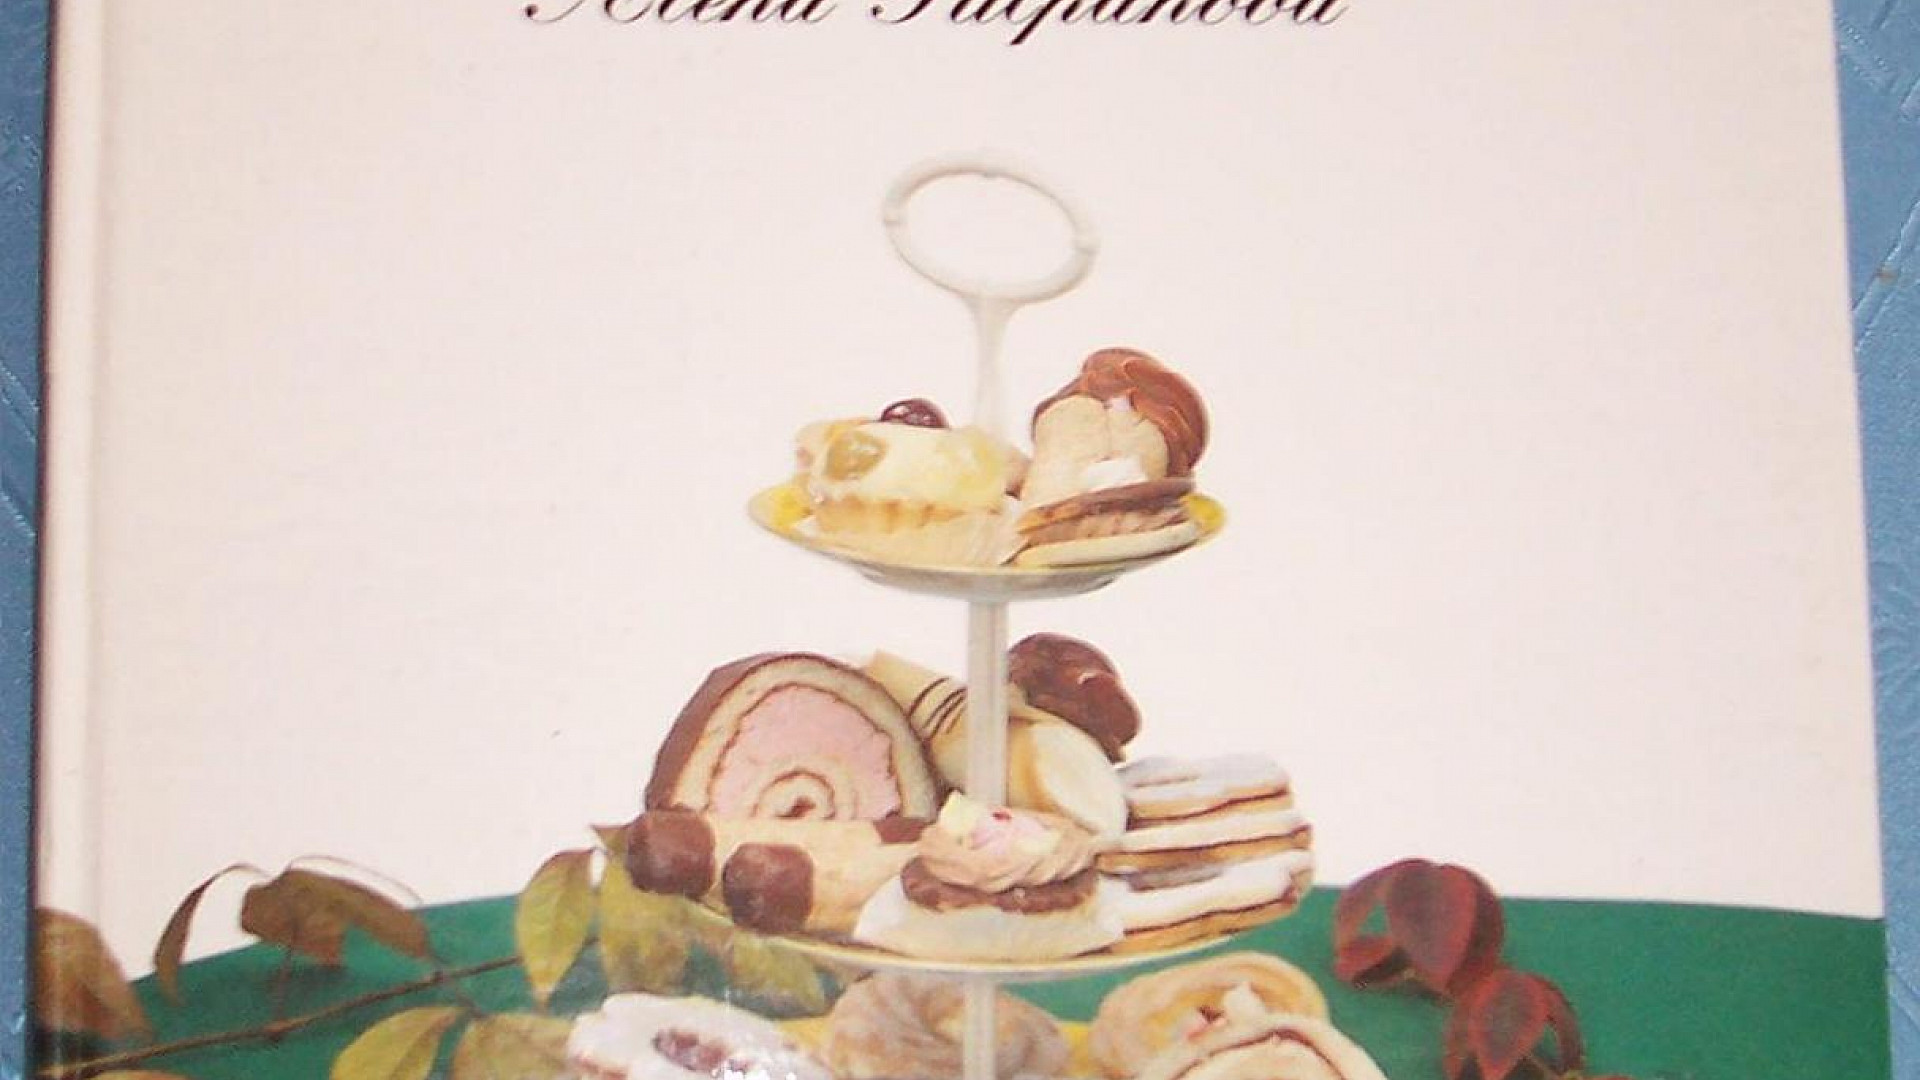 Biskupský chlebíček z Cukrářské technologie“ od Aleny Půlpánové z r. 1993